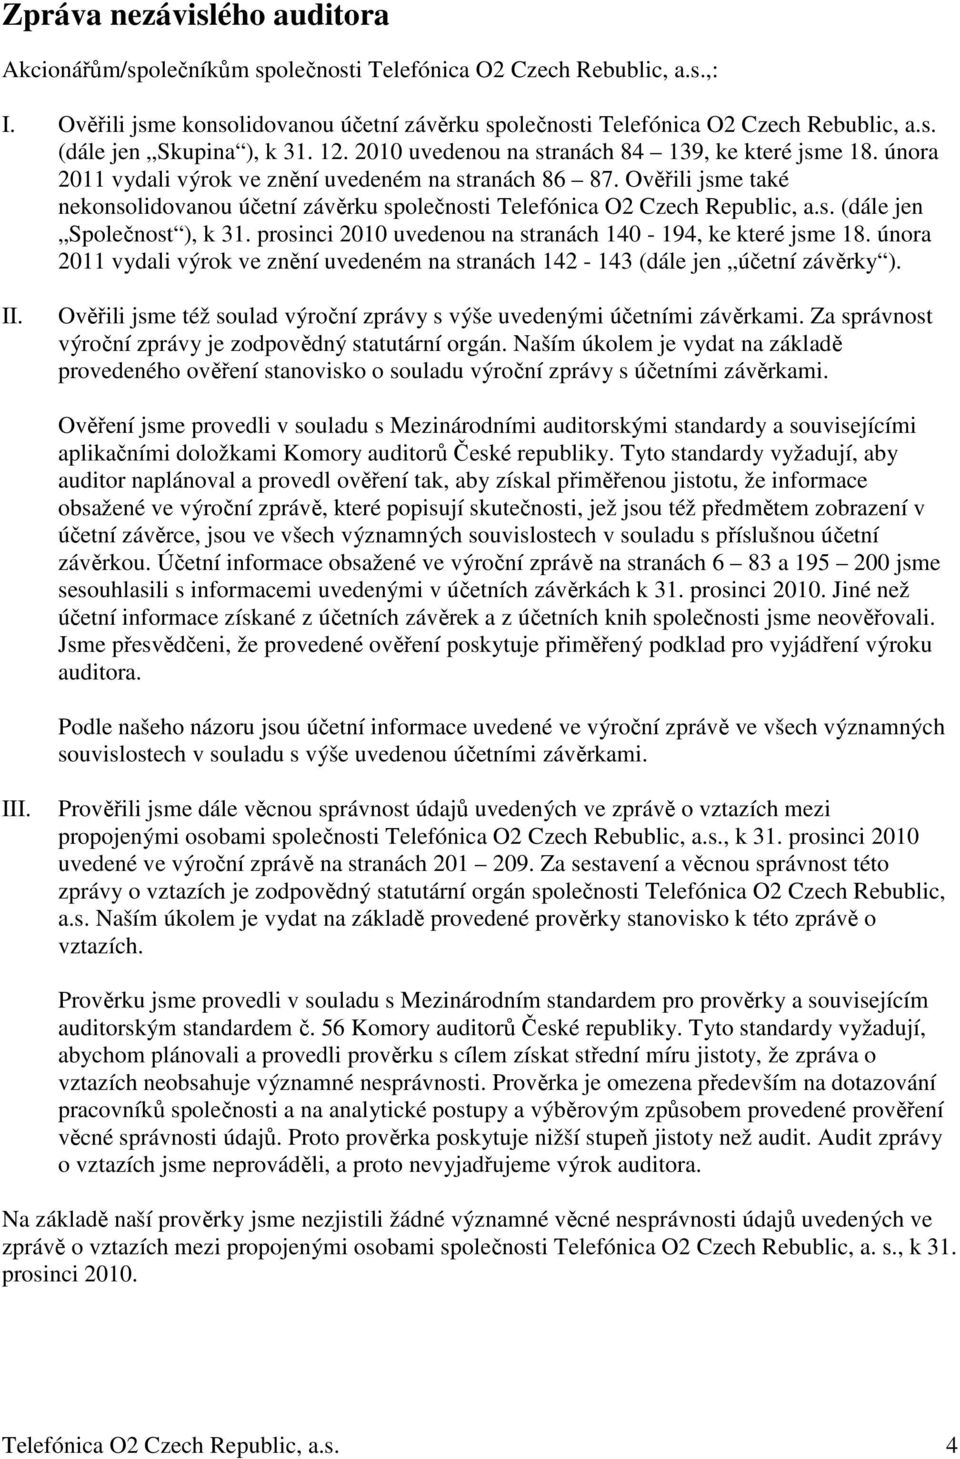 Ověřili jsme také nekonsolidovanou účetní závěrku společnosti Telefónica O2 Czech Republic, a.s. (dále jen Společnost ), k 31. prosinci 2010 uvedenou na stranách 140-194, ke které jsme 18.